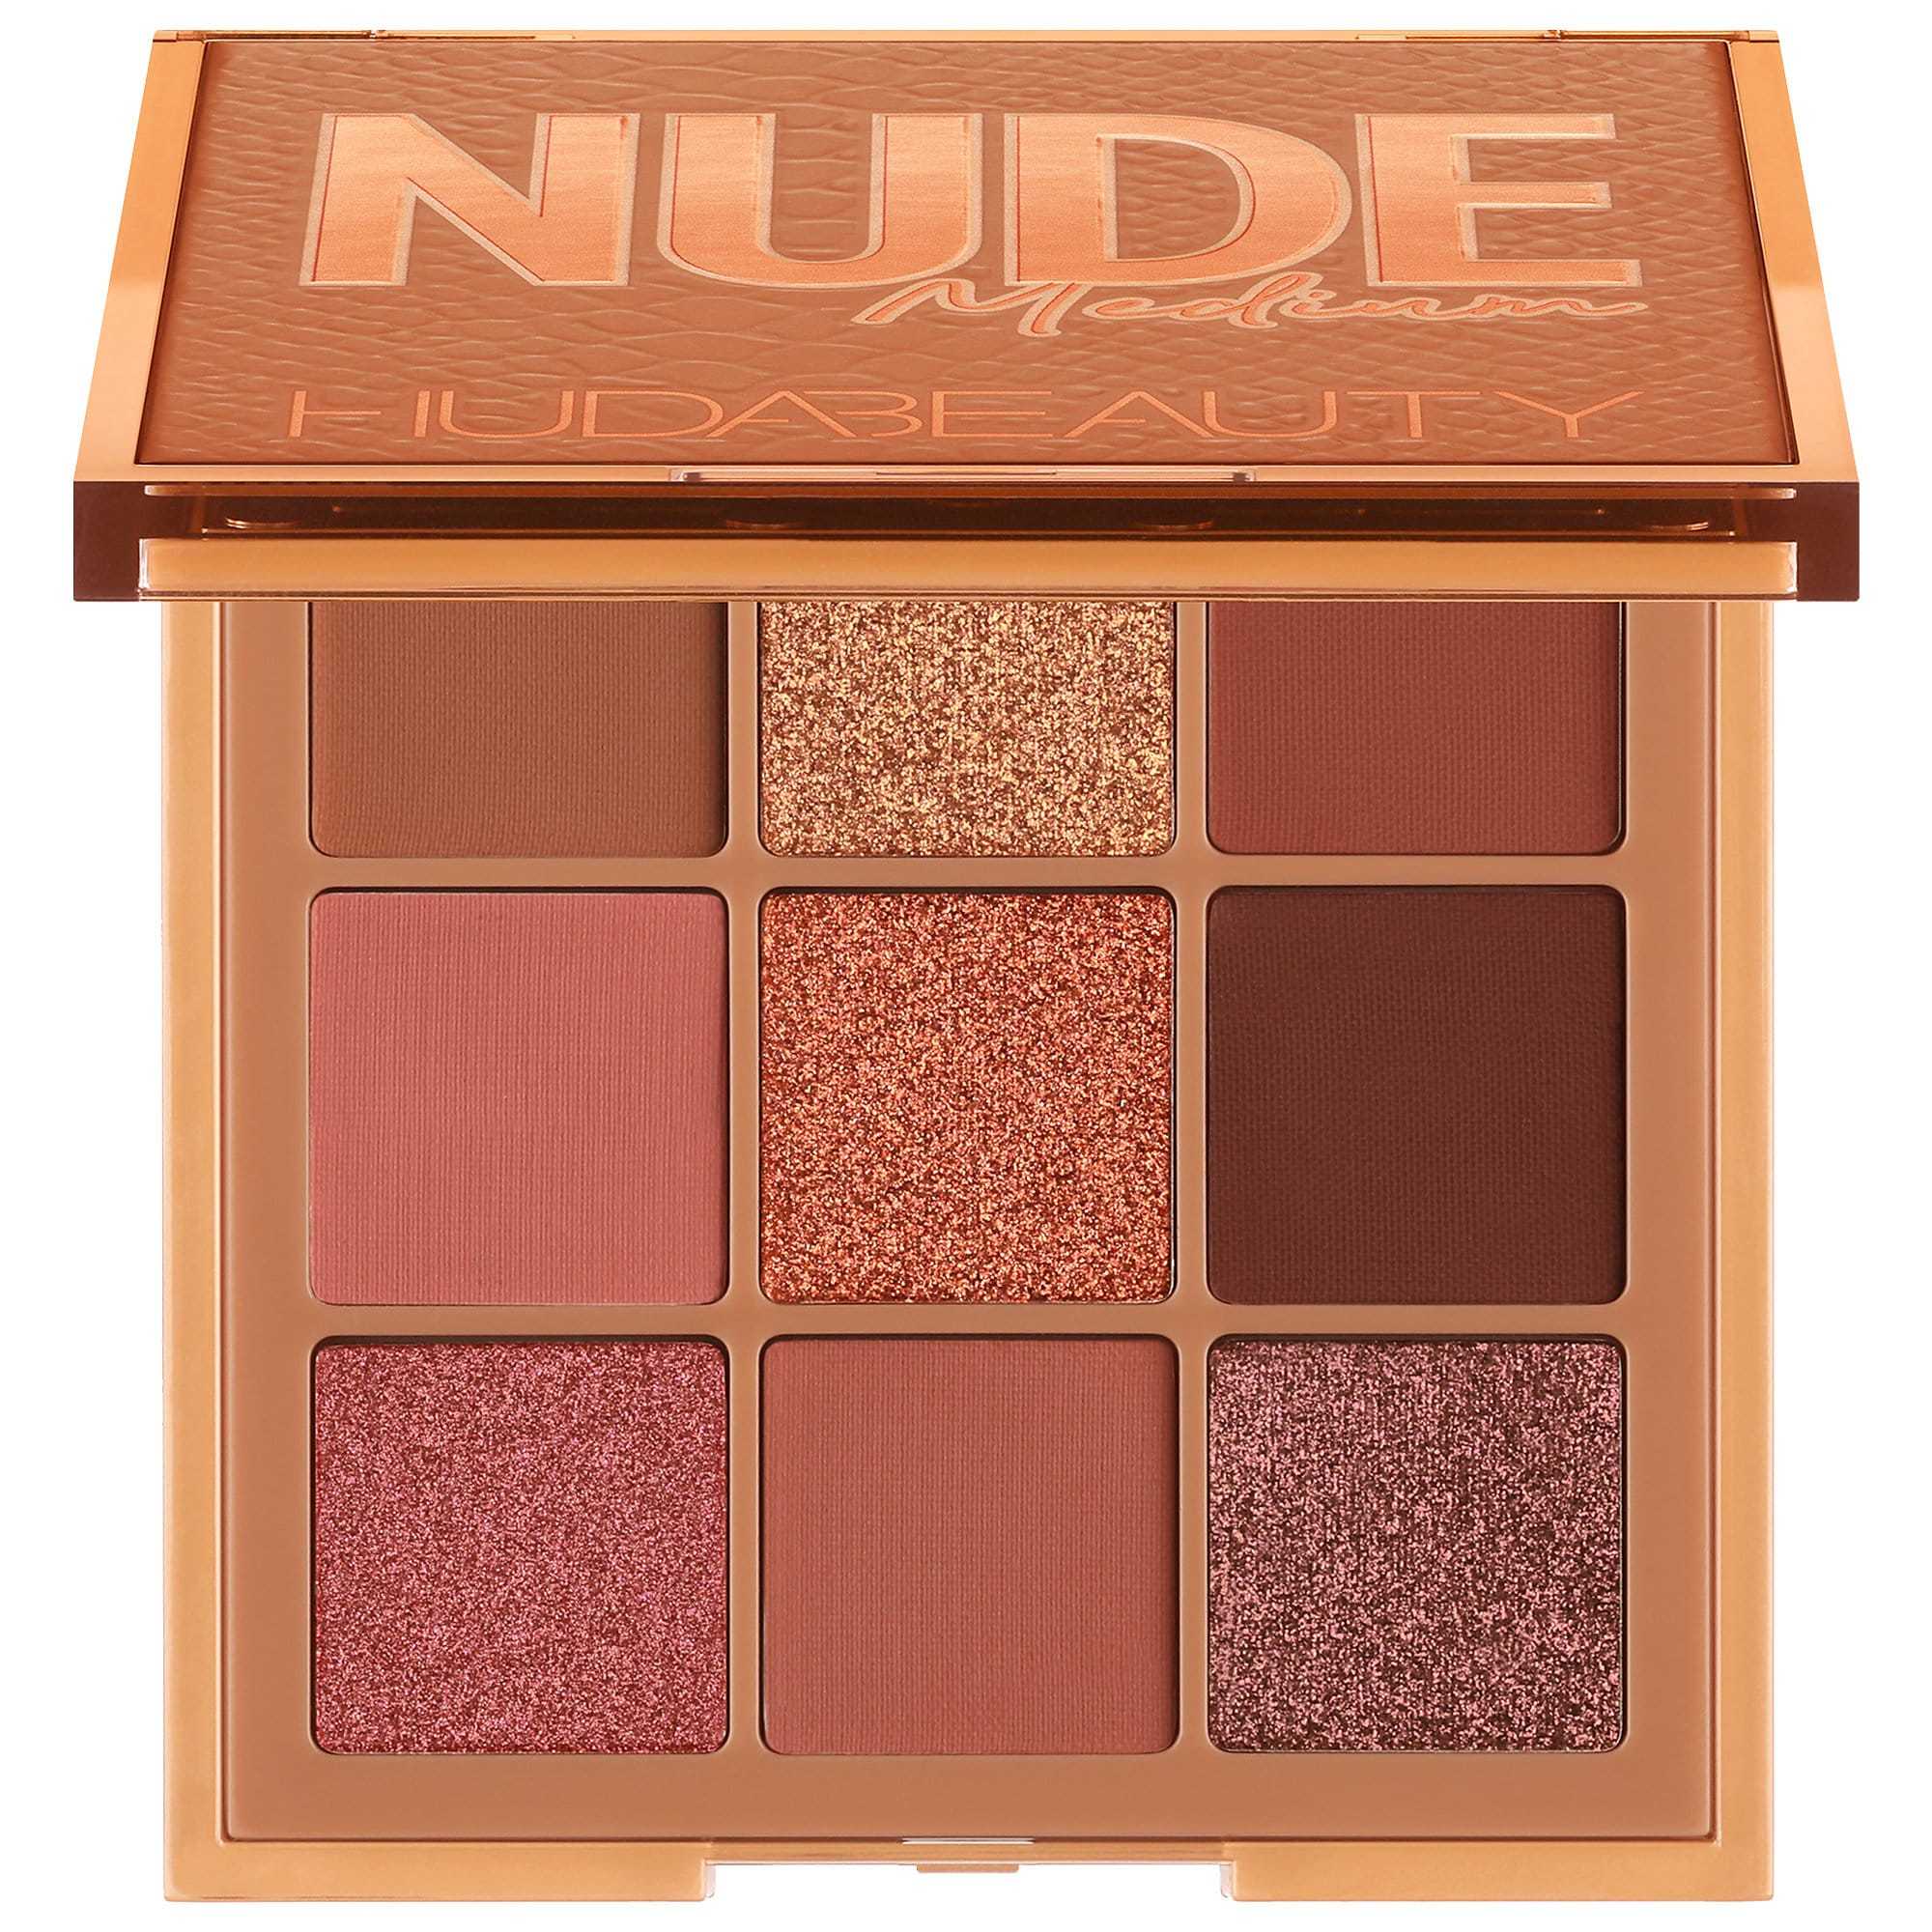 HUDA Beauty Nude Medium Obsessions Palette